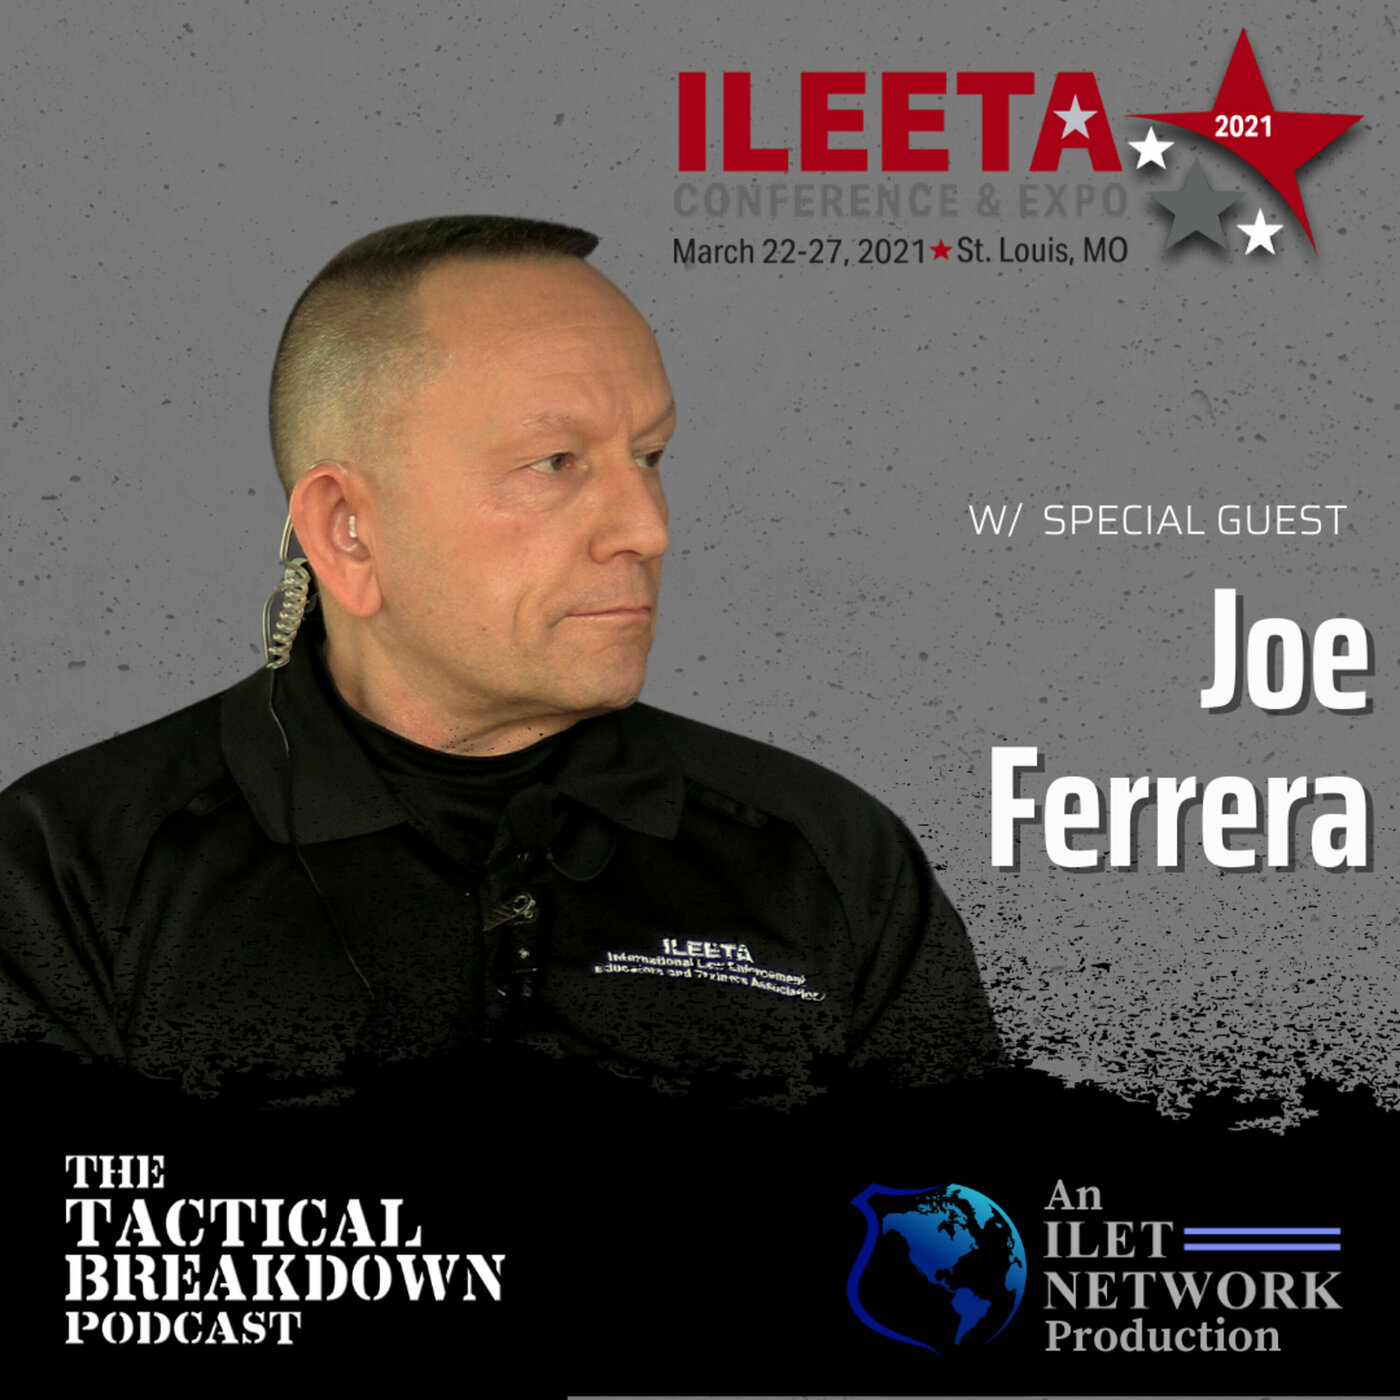 "Little" Joe Ferrera - Threat Pattern Recognition in Firearms Training